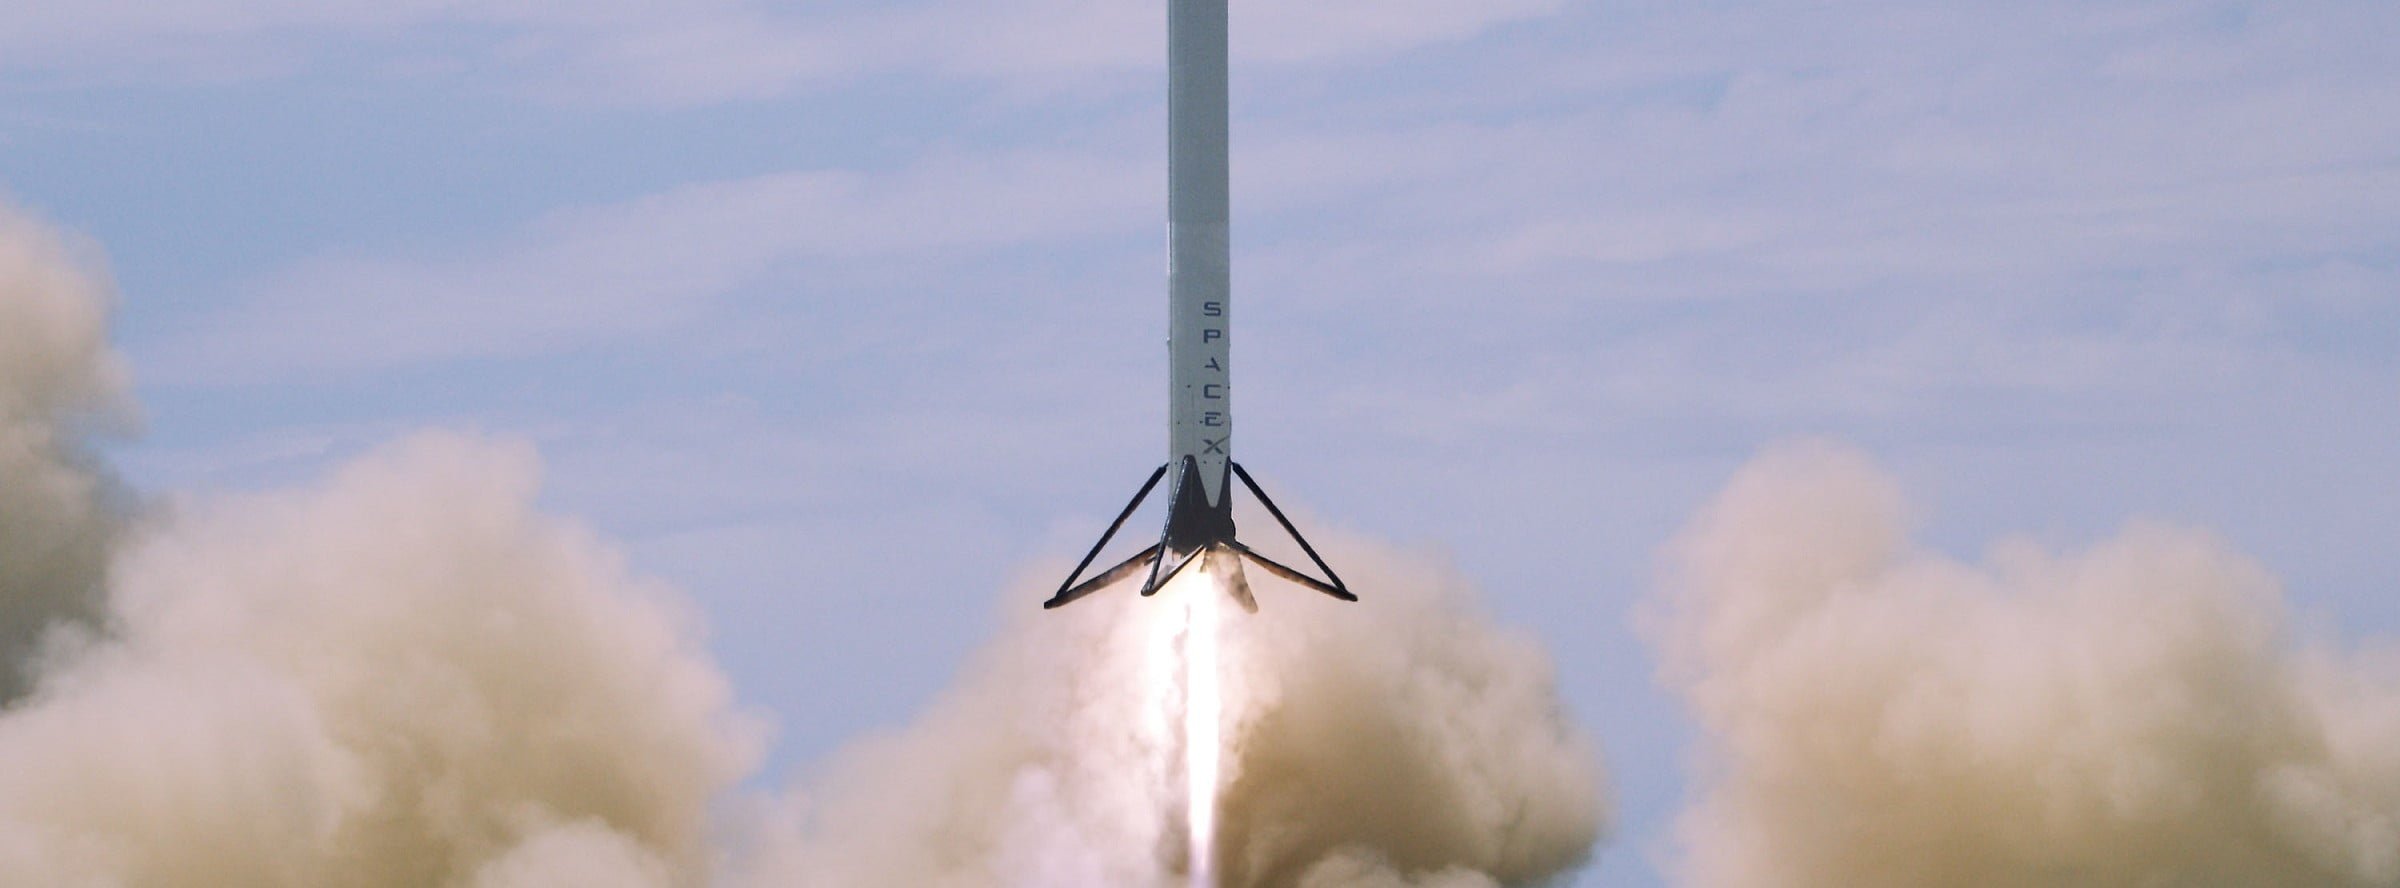 f9r flight e1451157953727 التاريخ يُصنع: صاروخ سبيس إكس يهبط بشكل عامودي بعد إطلاقه إلى الفضاء مجلة نقطة العلمية